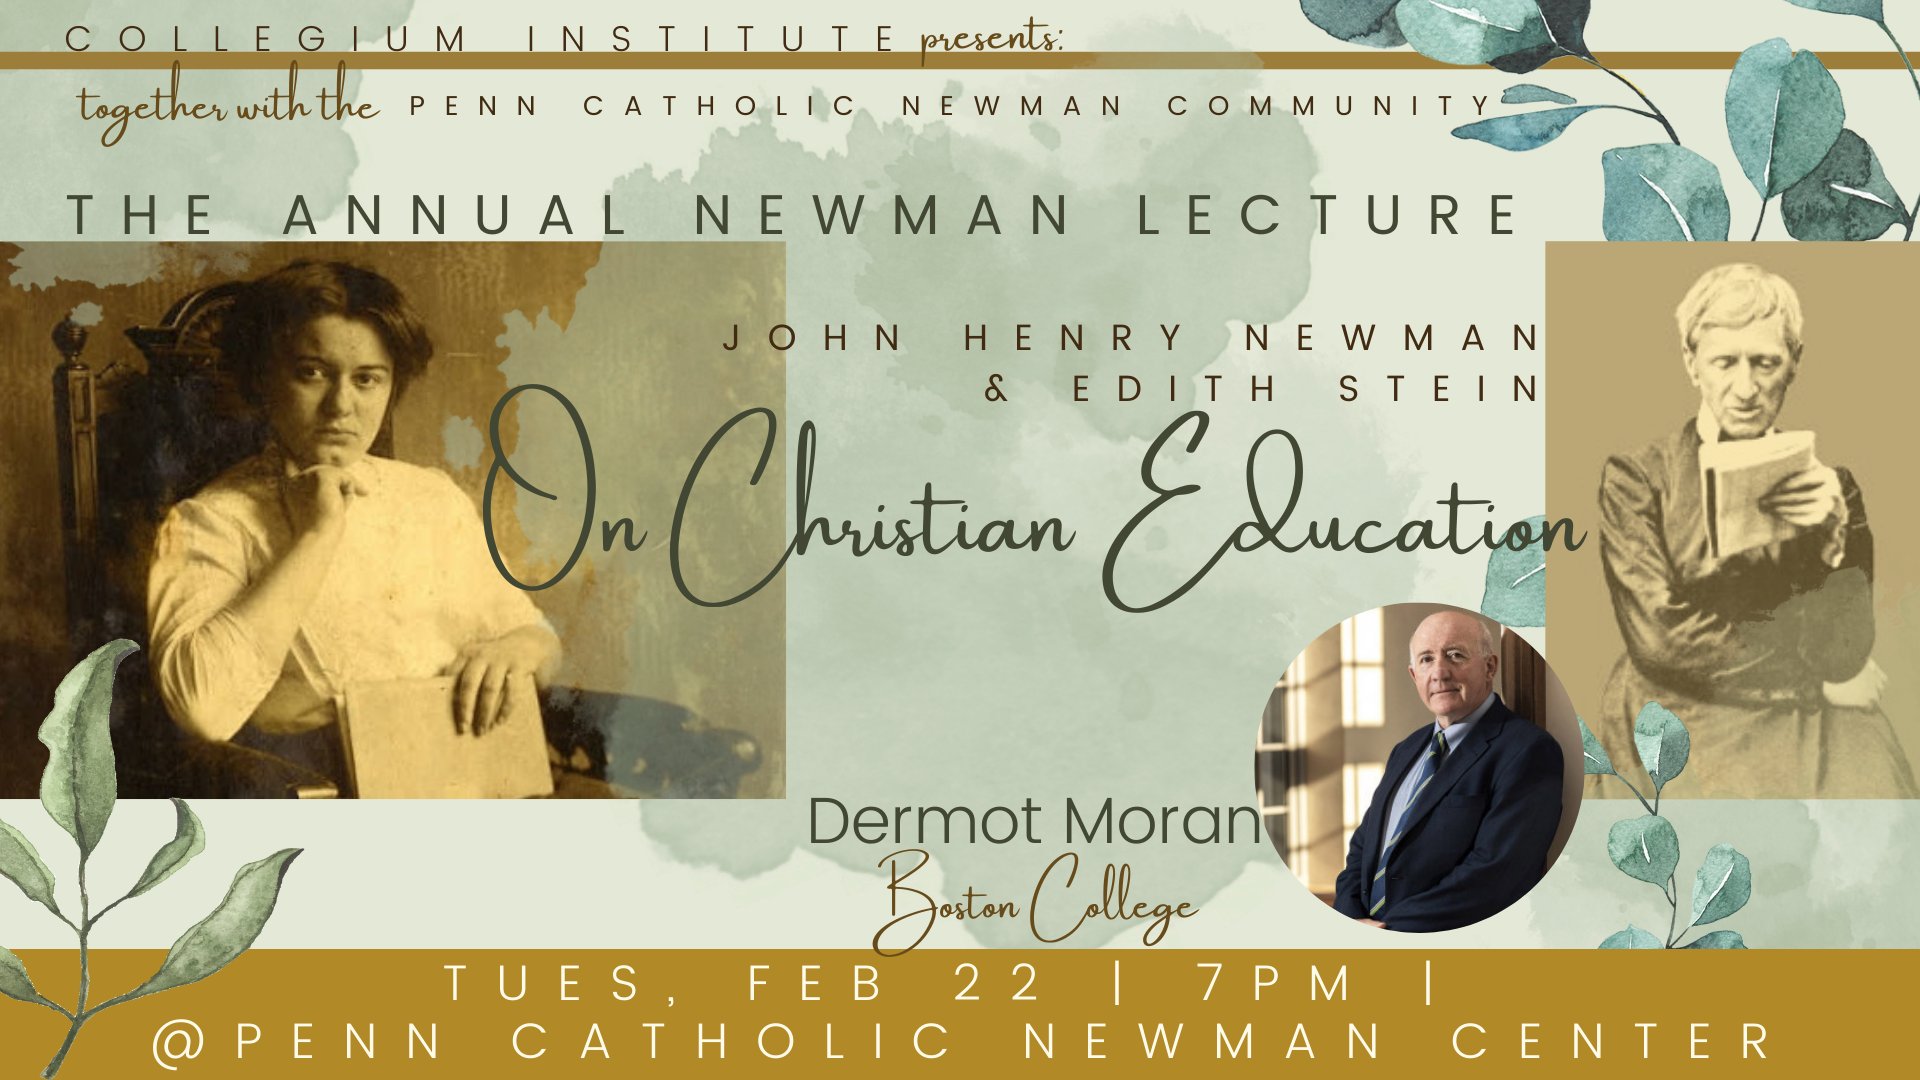 Collegium Institute Annual Newman Lecture: Prof. Dermot Moran